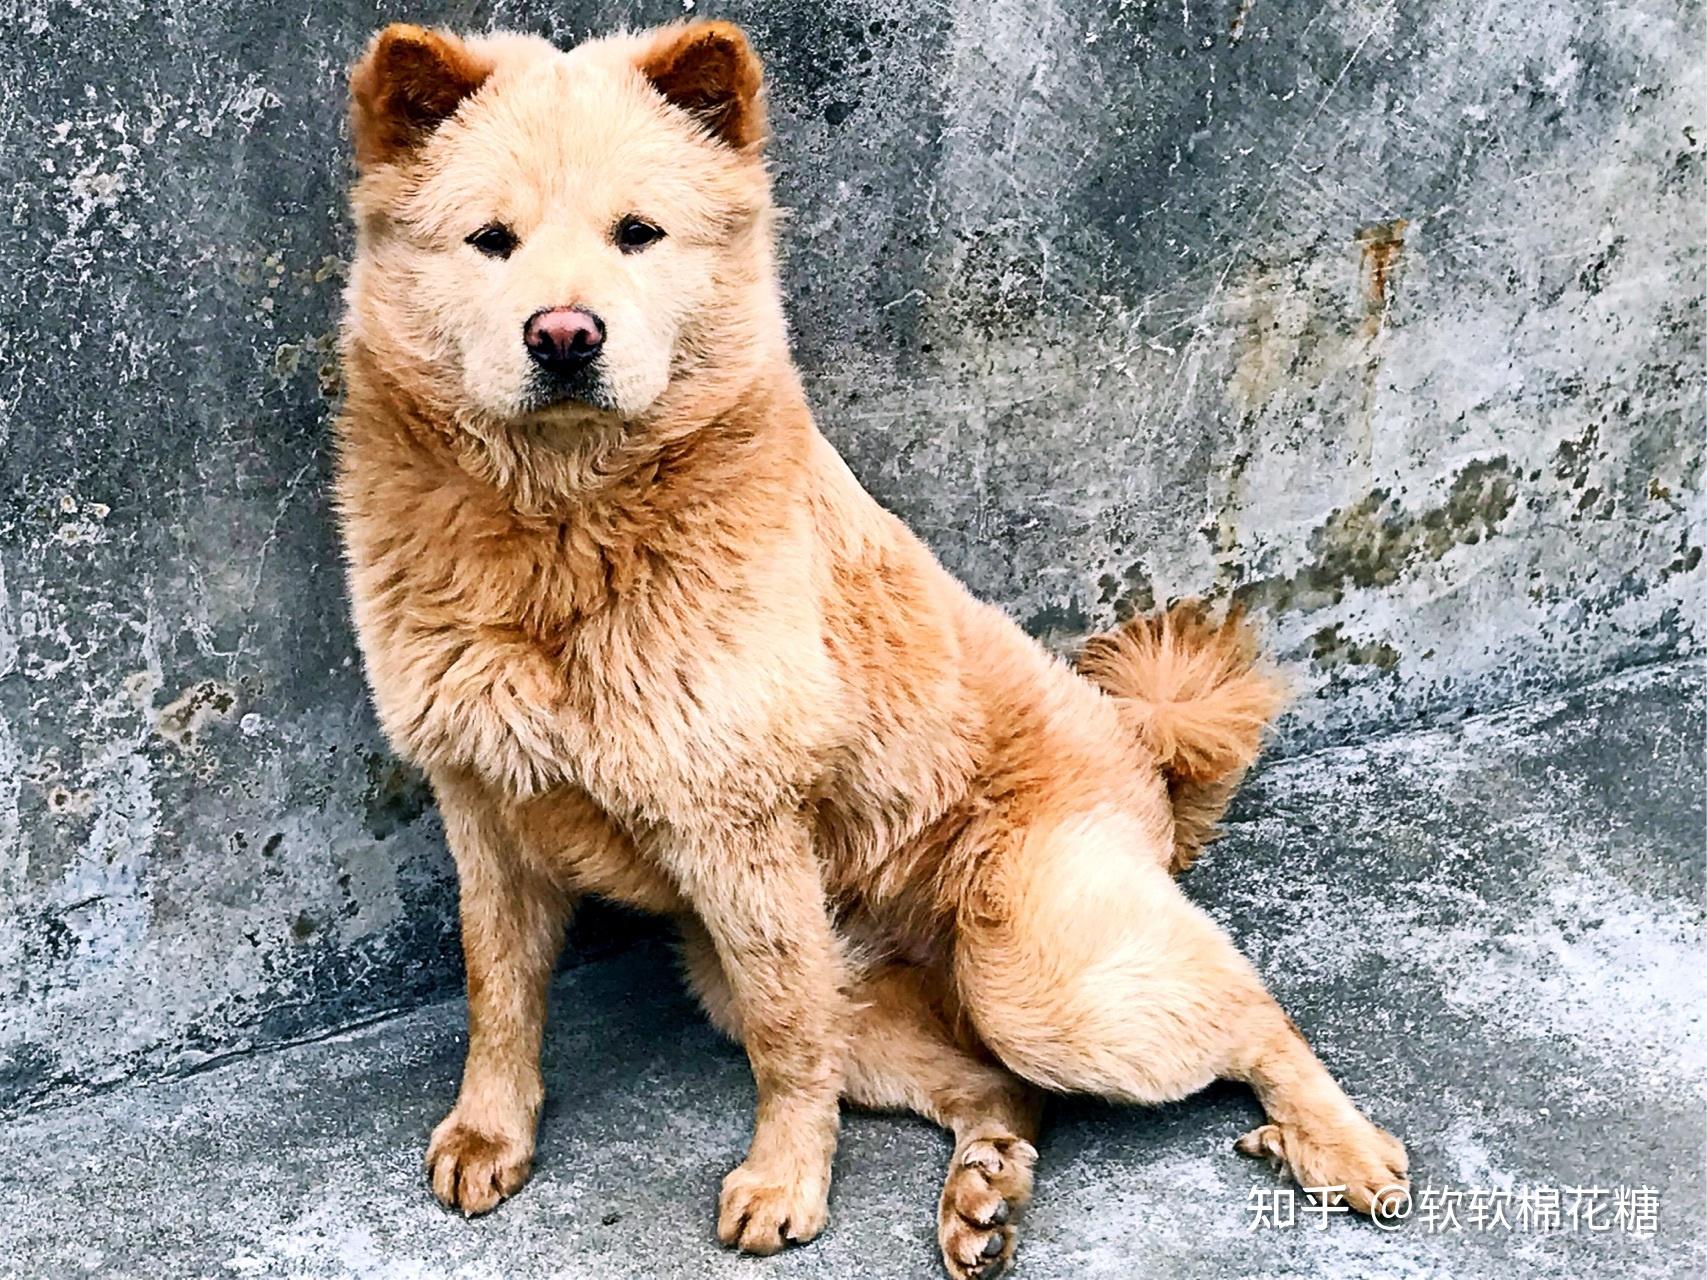 土松狮:它产自于广东,经过培育后,成为了宠物级别的松狮犬但土松狮和